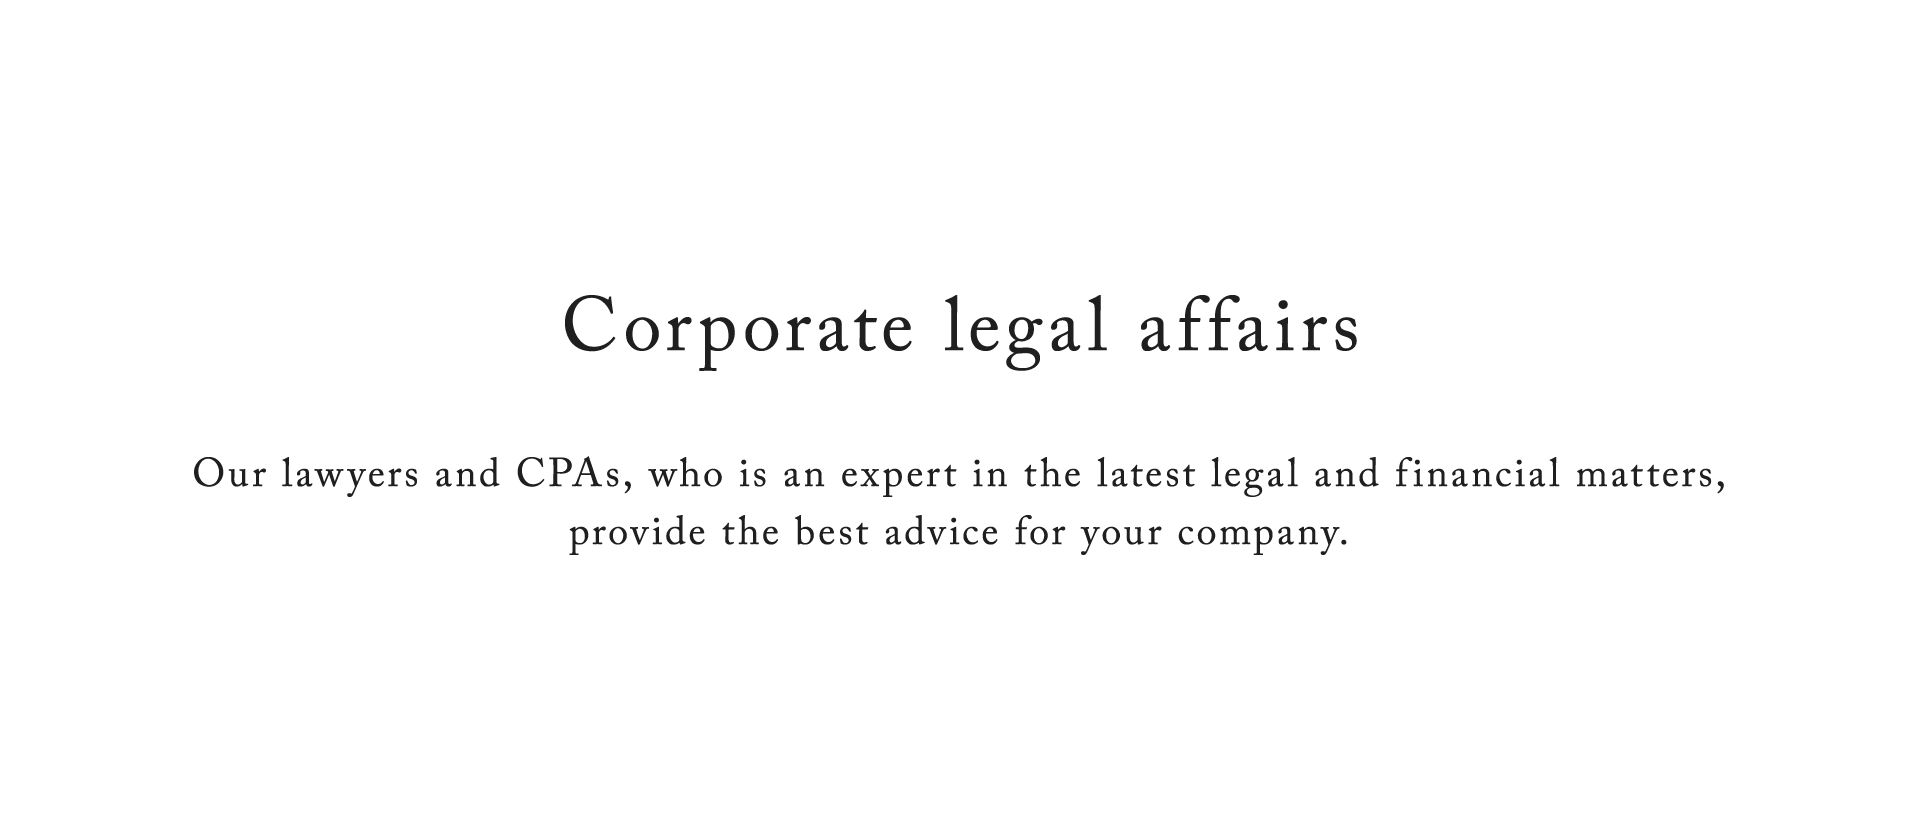 Corporate legal affairs